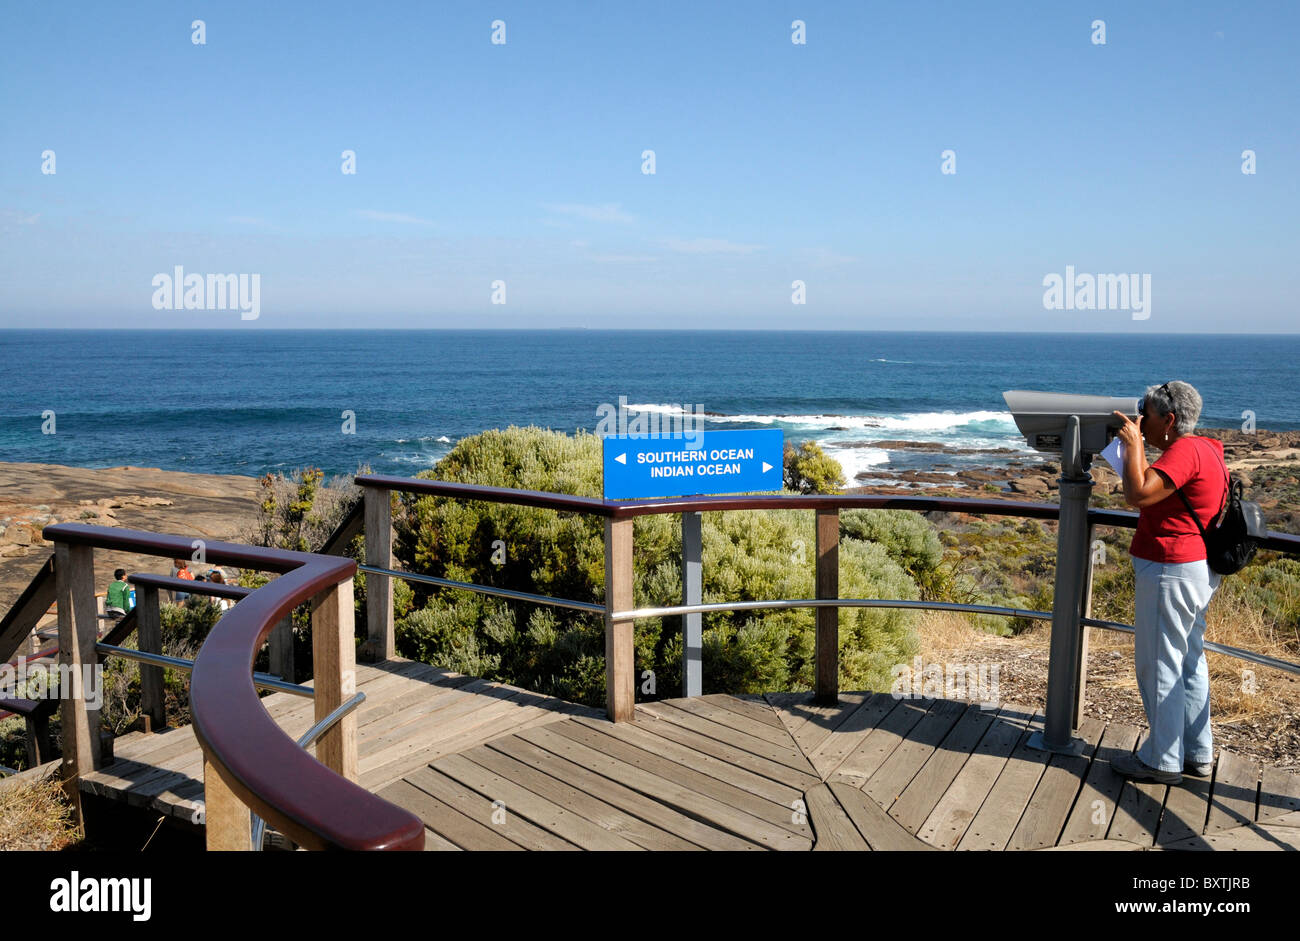 Treffen die südlichen und der indische Ozean am Cape Leeuwin Wa Australien Stockfoto